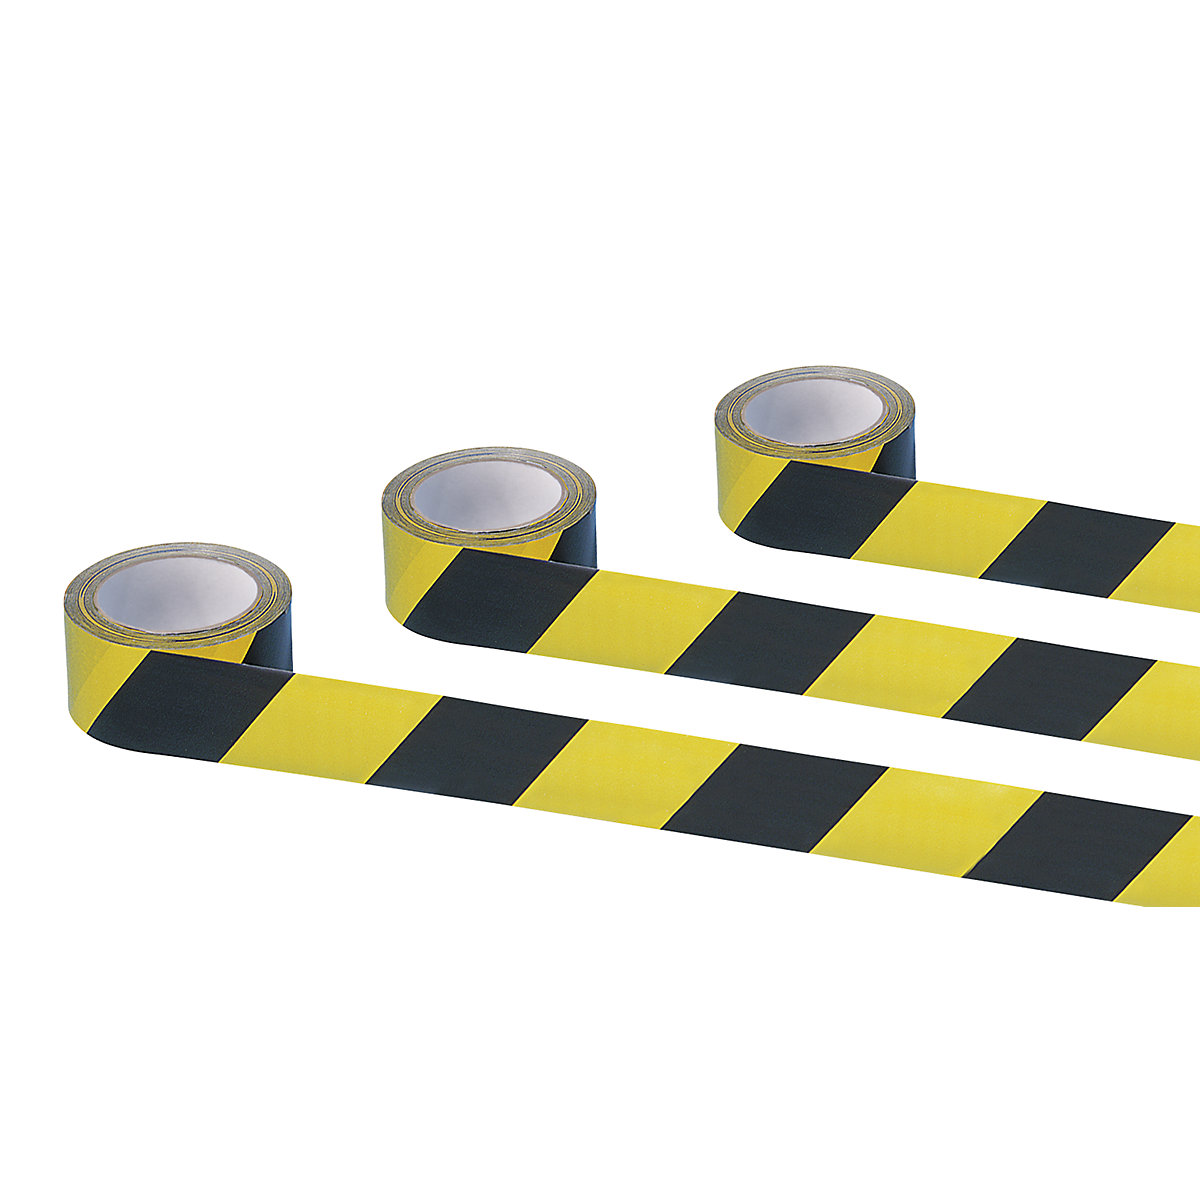 Bande adhésive de signalisation, coloris jaune / noir, lot de 3 rouleaux-2